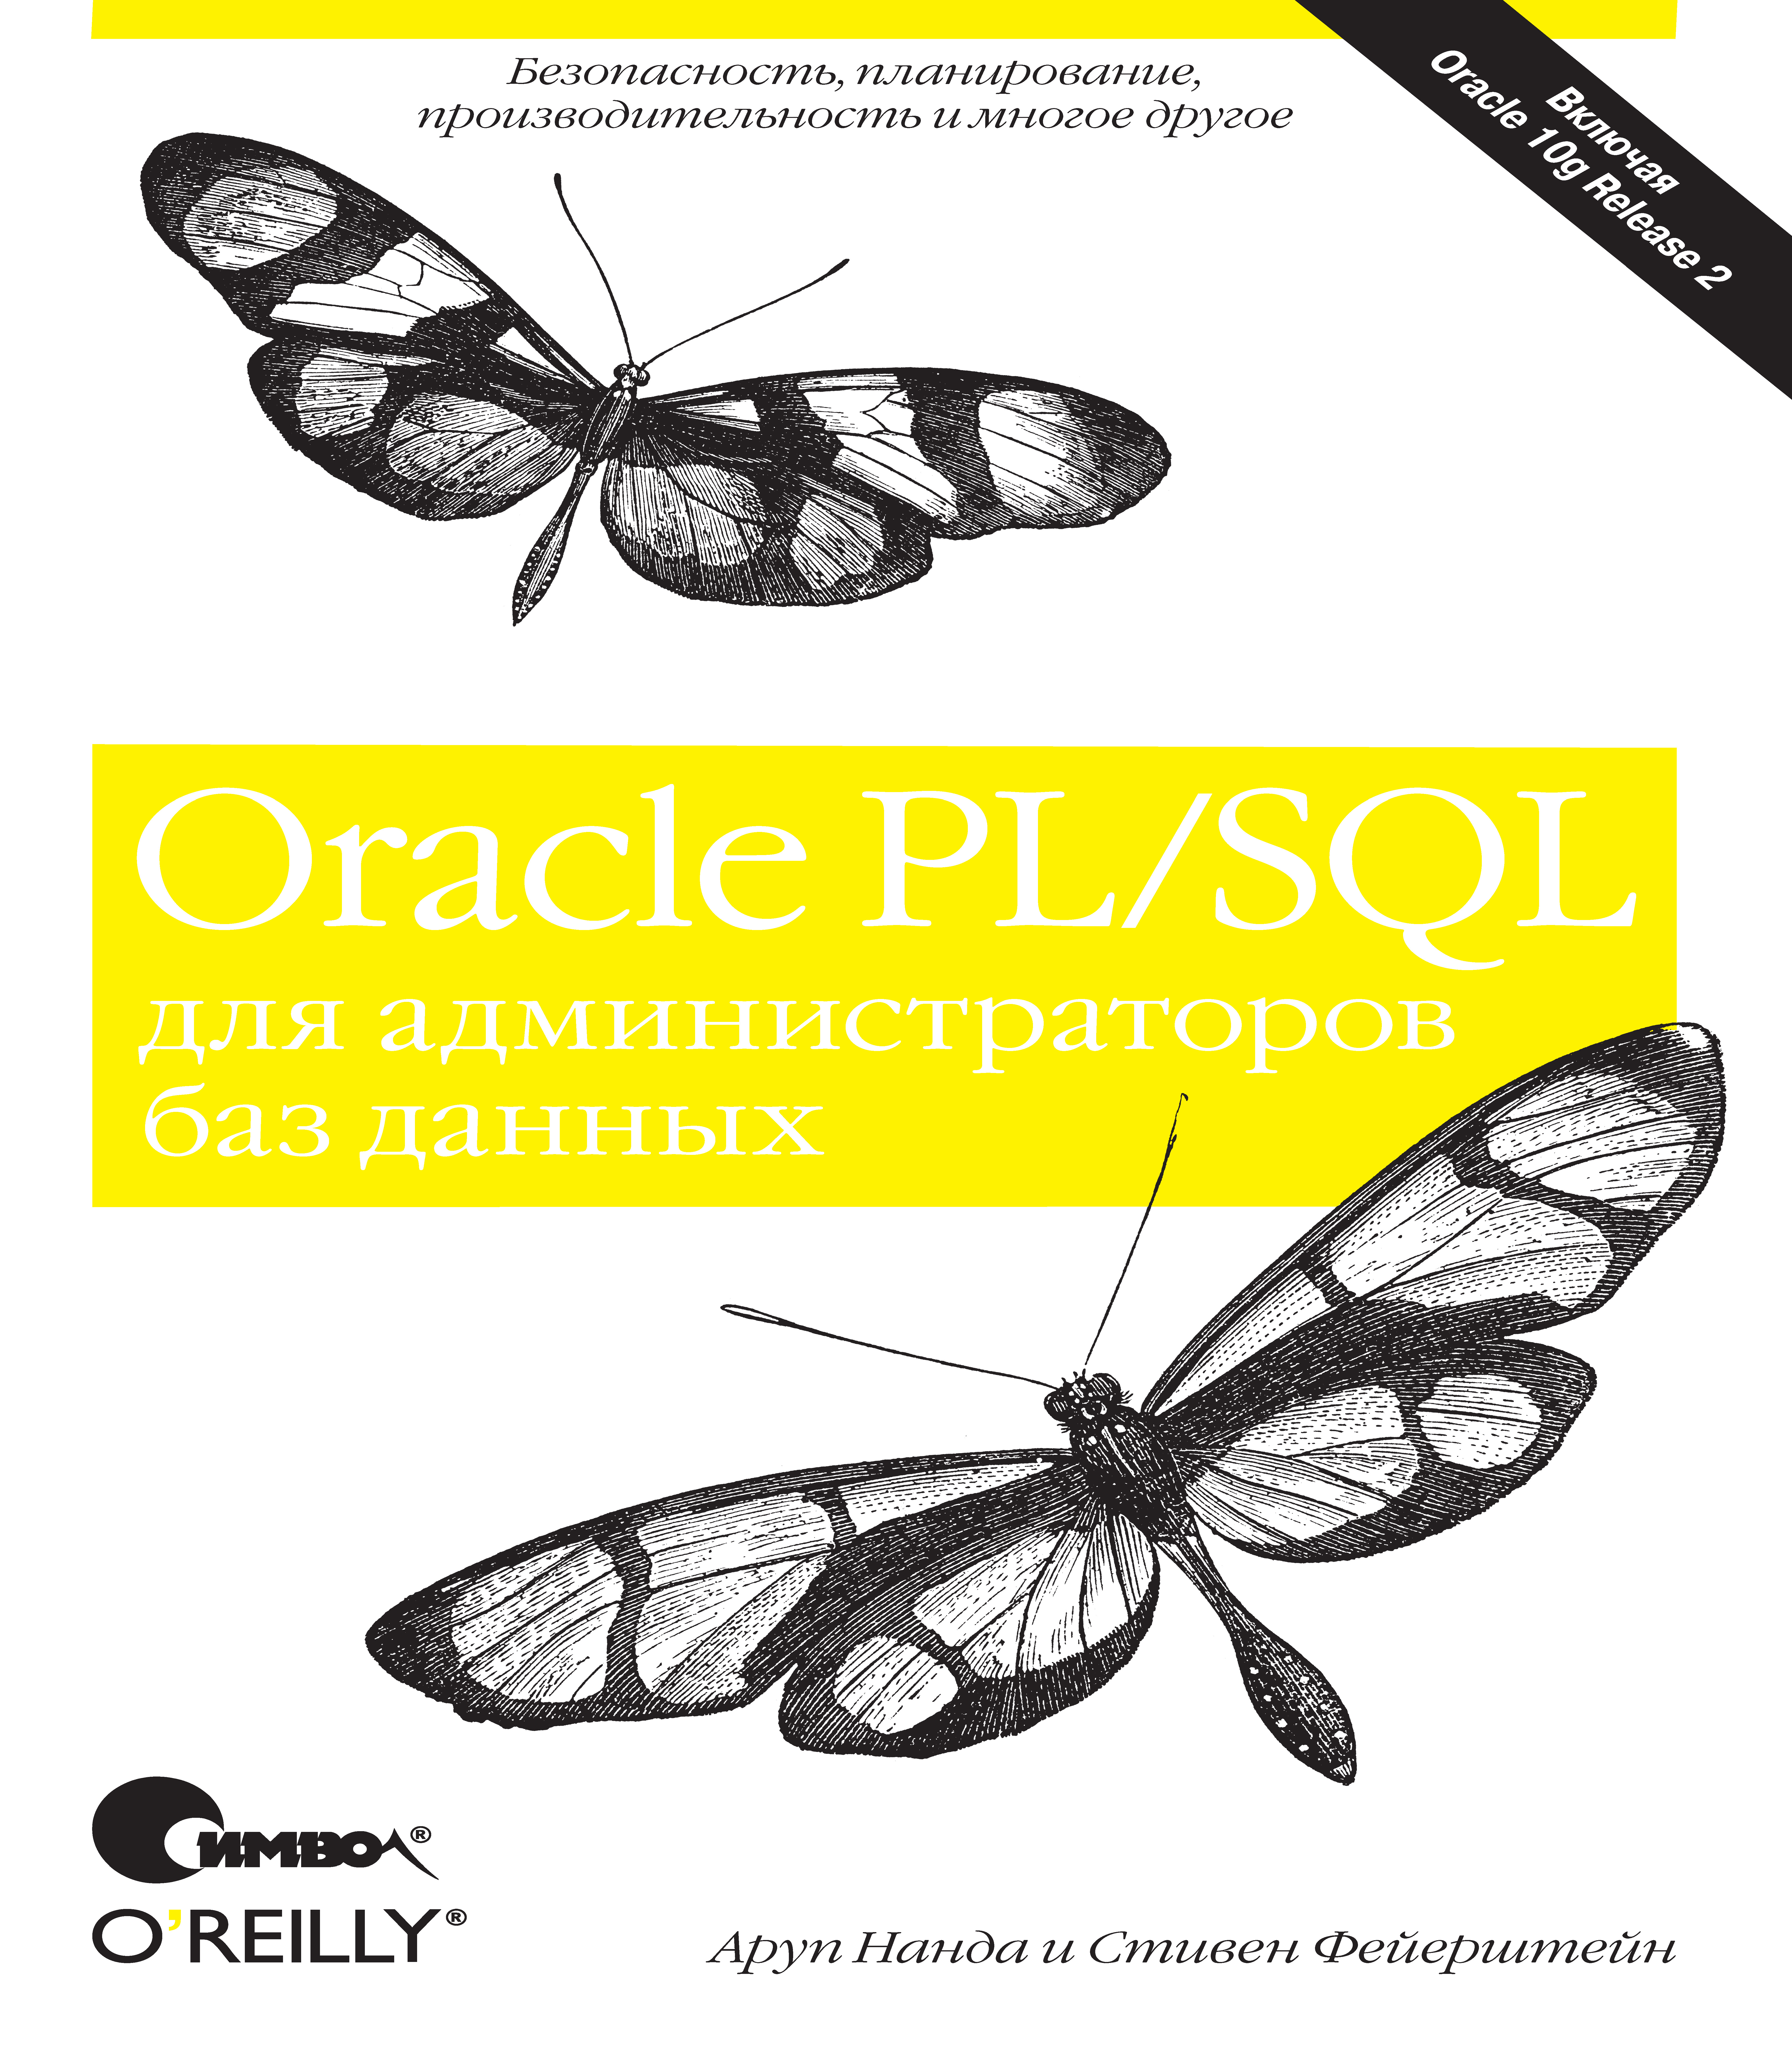 Книга  Oracle PL/SQL для администраторов баз данных созданная Аруп Нанда, Стивен Фейерштейн, П. Шер может относится к жанру базы данных, зарубежная компьютерная литература, книги о компьютерах, компьютерная справочная литература, программы. Стоимость электронной книги Oracle PL/SQL для администраторов баз данных с идентификатором 24499414 составляет 190.00 руб.